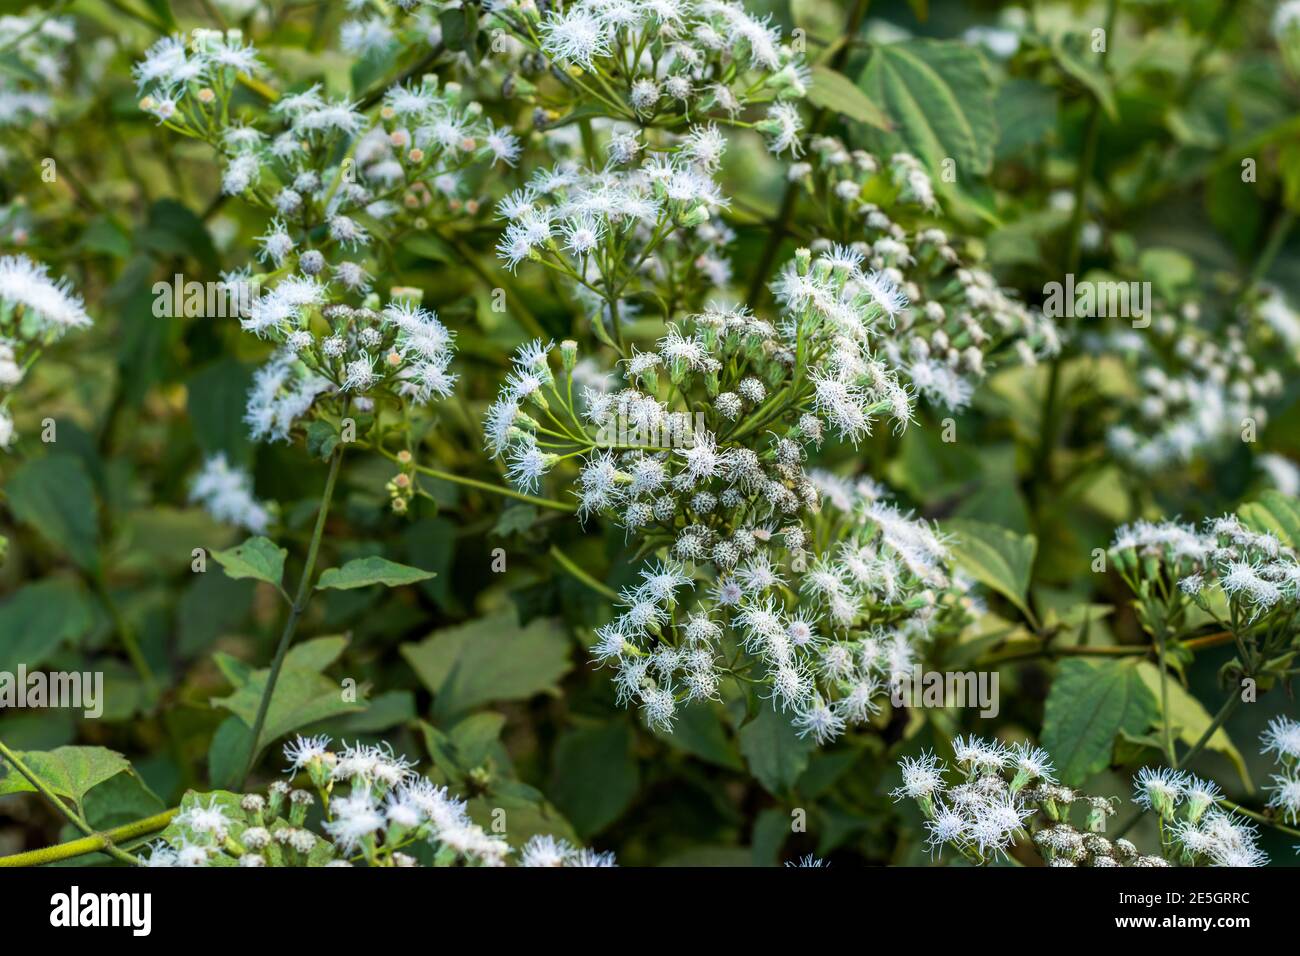 A bunch of Fall boneset grass flower also called Eupatorium serotine Stock Photo